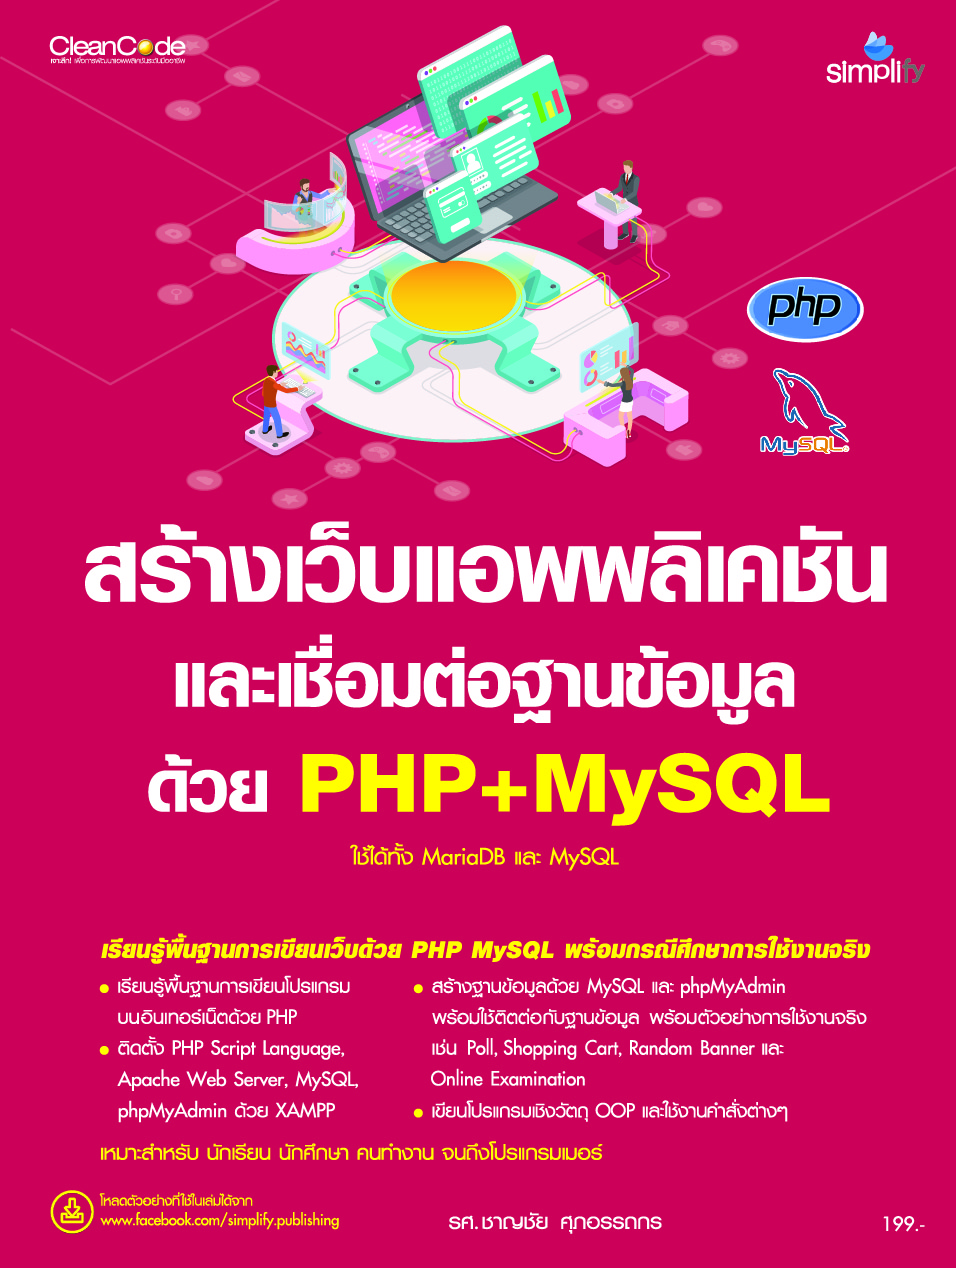 สร้างเว็บแอพพลิเคชัน และเชื่อมต่อฐานข้อมูลด้วย PHP+MySQL ใช้ได้ทั้ง MariaDB และ MySQL